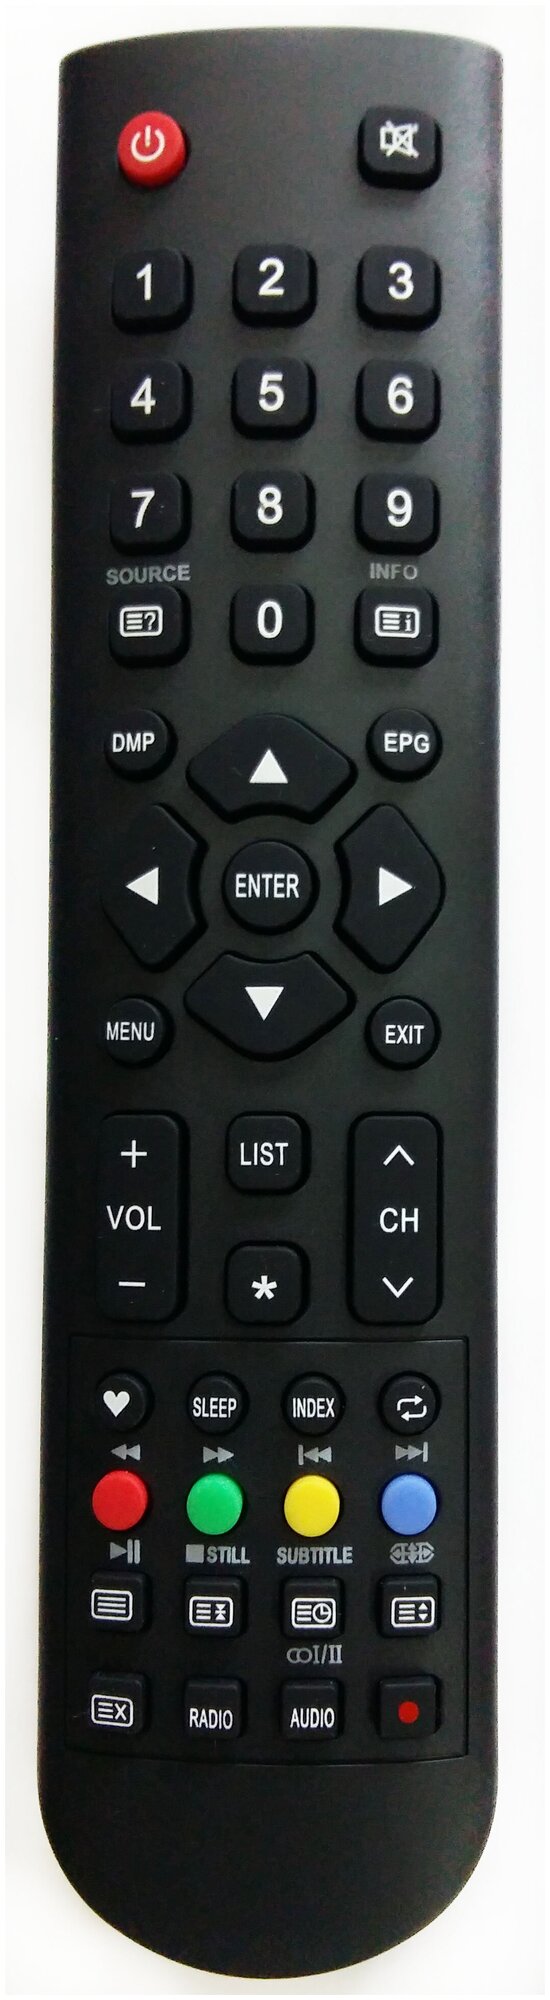 Пульт для телевизора DEXP F40D7100C (вар.1), (возможны разные варианты пультов, друг друга не заменяющие)